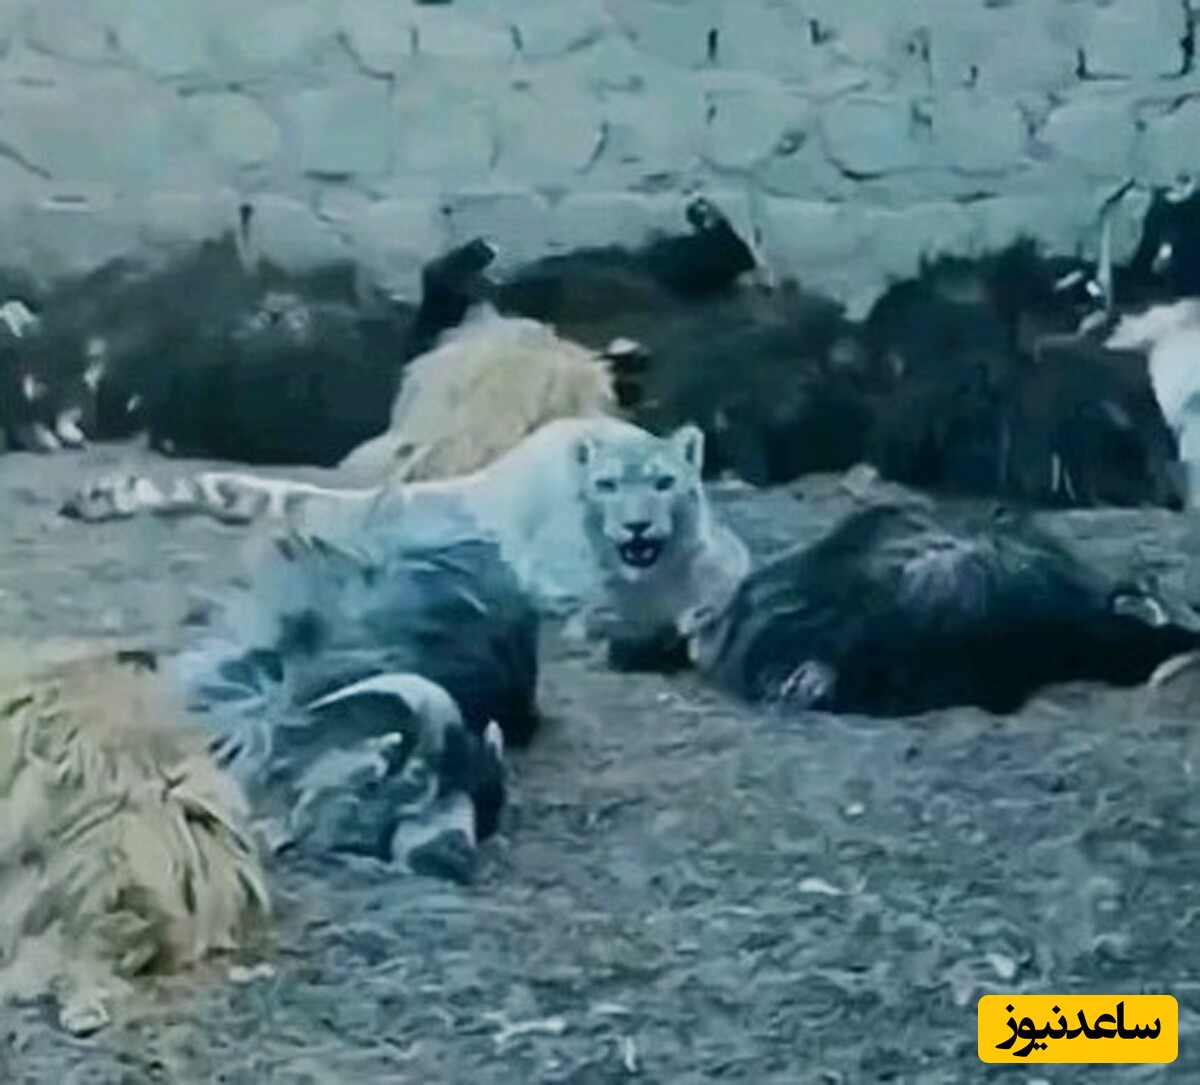 حیات وحش؛ حمله پلنگ سنگدل به یک گله گوسفند / چوپان چه جرأتی داره که وایستاده فیلم می‌گیره!